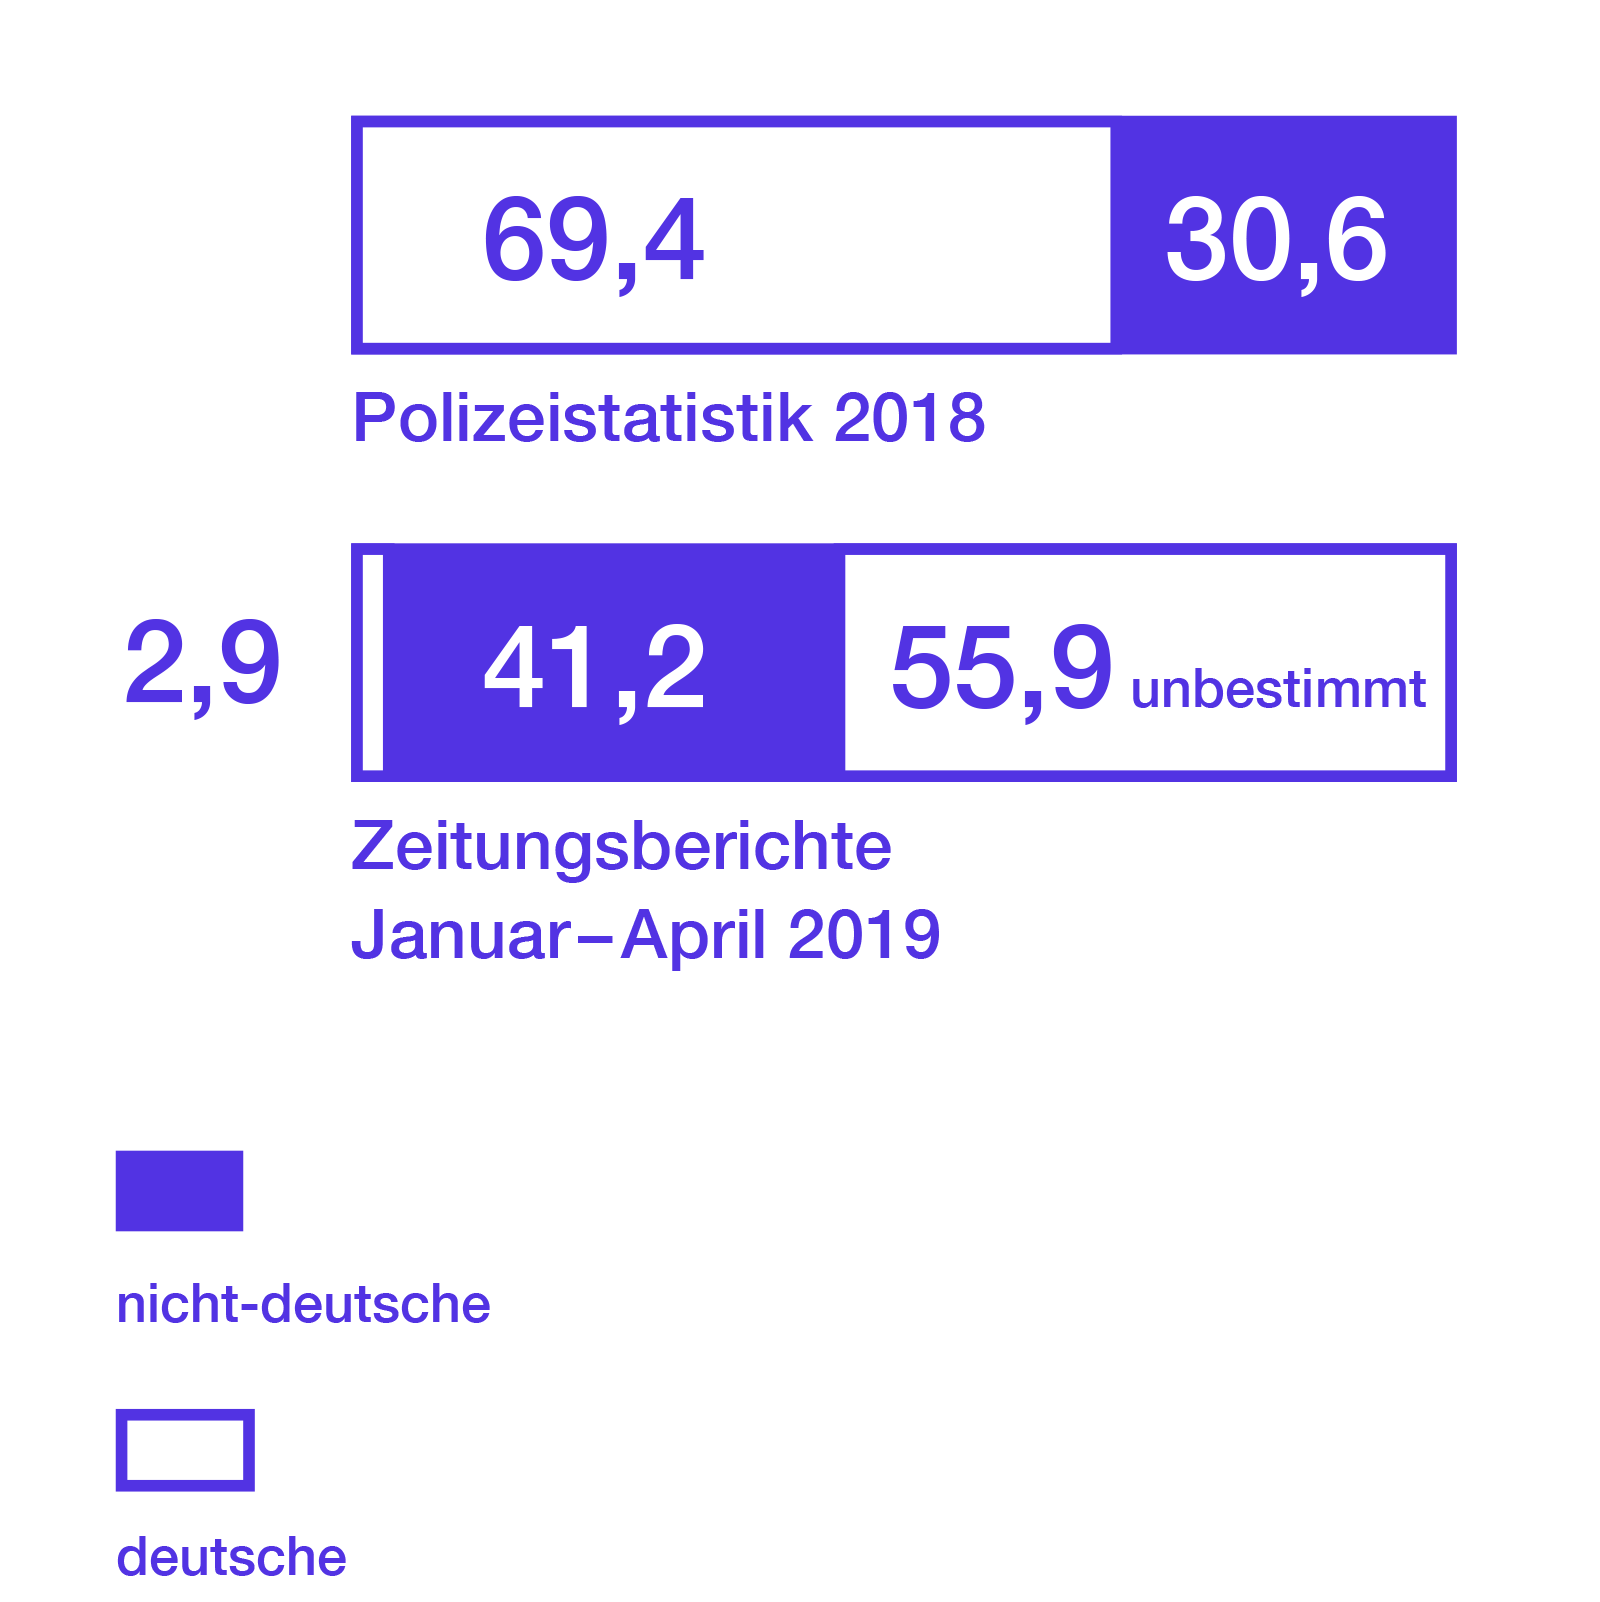 Laut Polizeistatistik von 2018 sind 69,4% der Tatverdächtigen Deutsche, 30,6% sind Ausländern. In Zeitungsberichten zwischen Januar und April 2019 waren 2,9% Deutsche, 41,2% Ausländer und 55,9% unbestimmt.